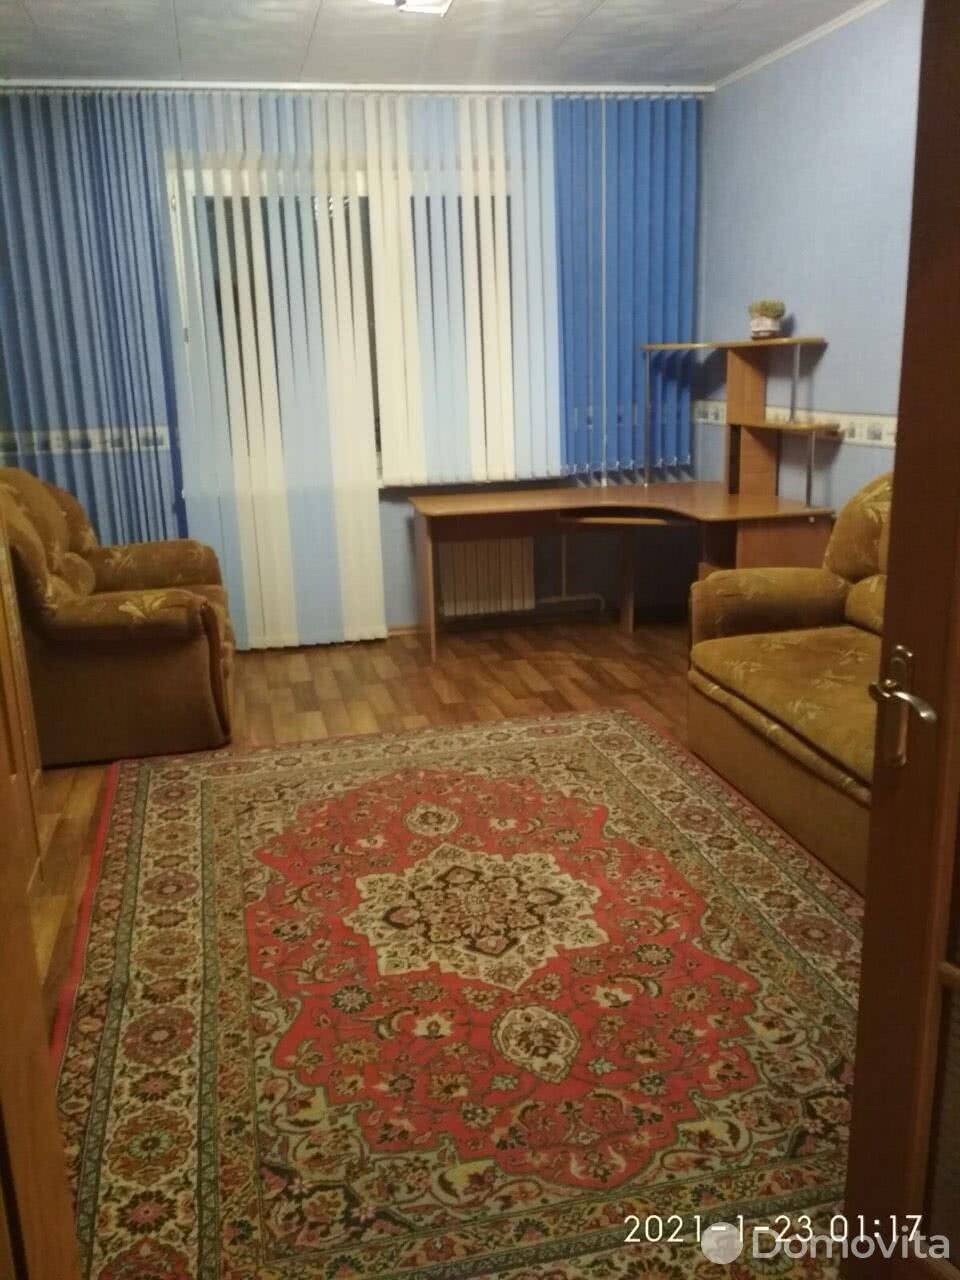 квартира, Борисов, ул. Чаловской, д. 51 